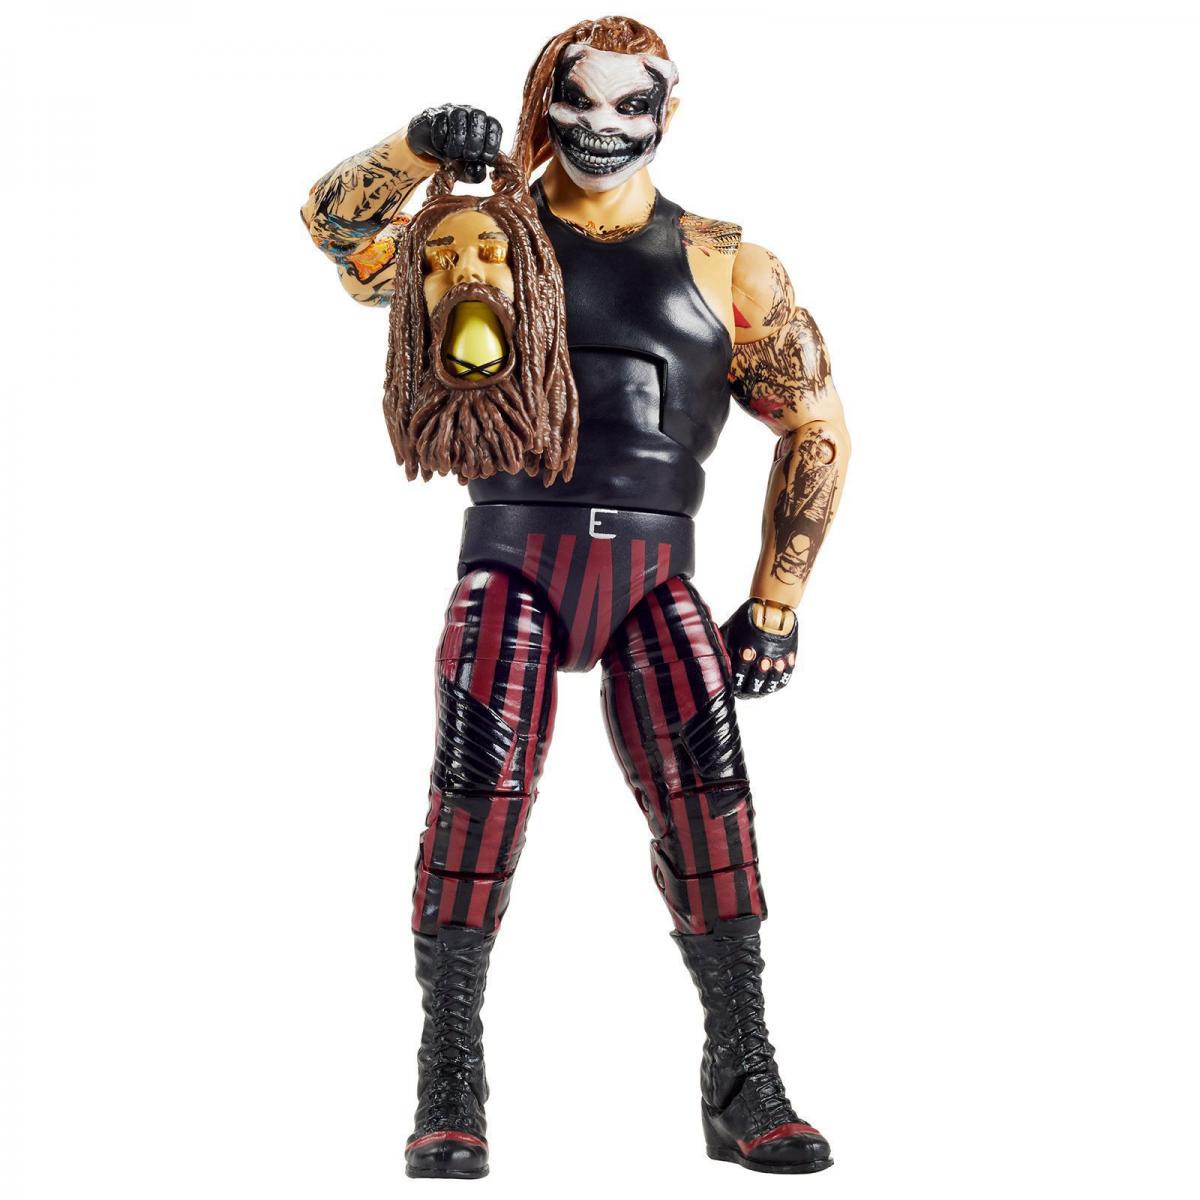 2020 WWE Mattel Elite Collection Series 77 "The Fiend" Bray Wyatt